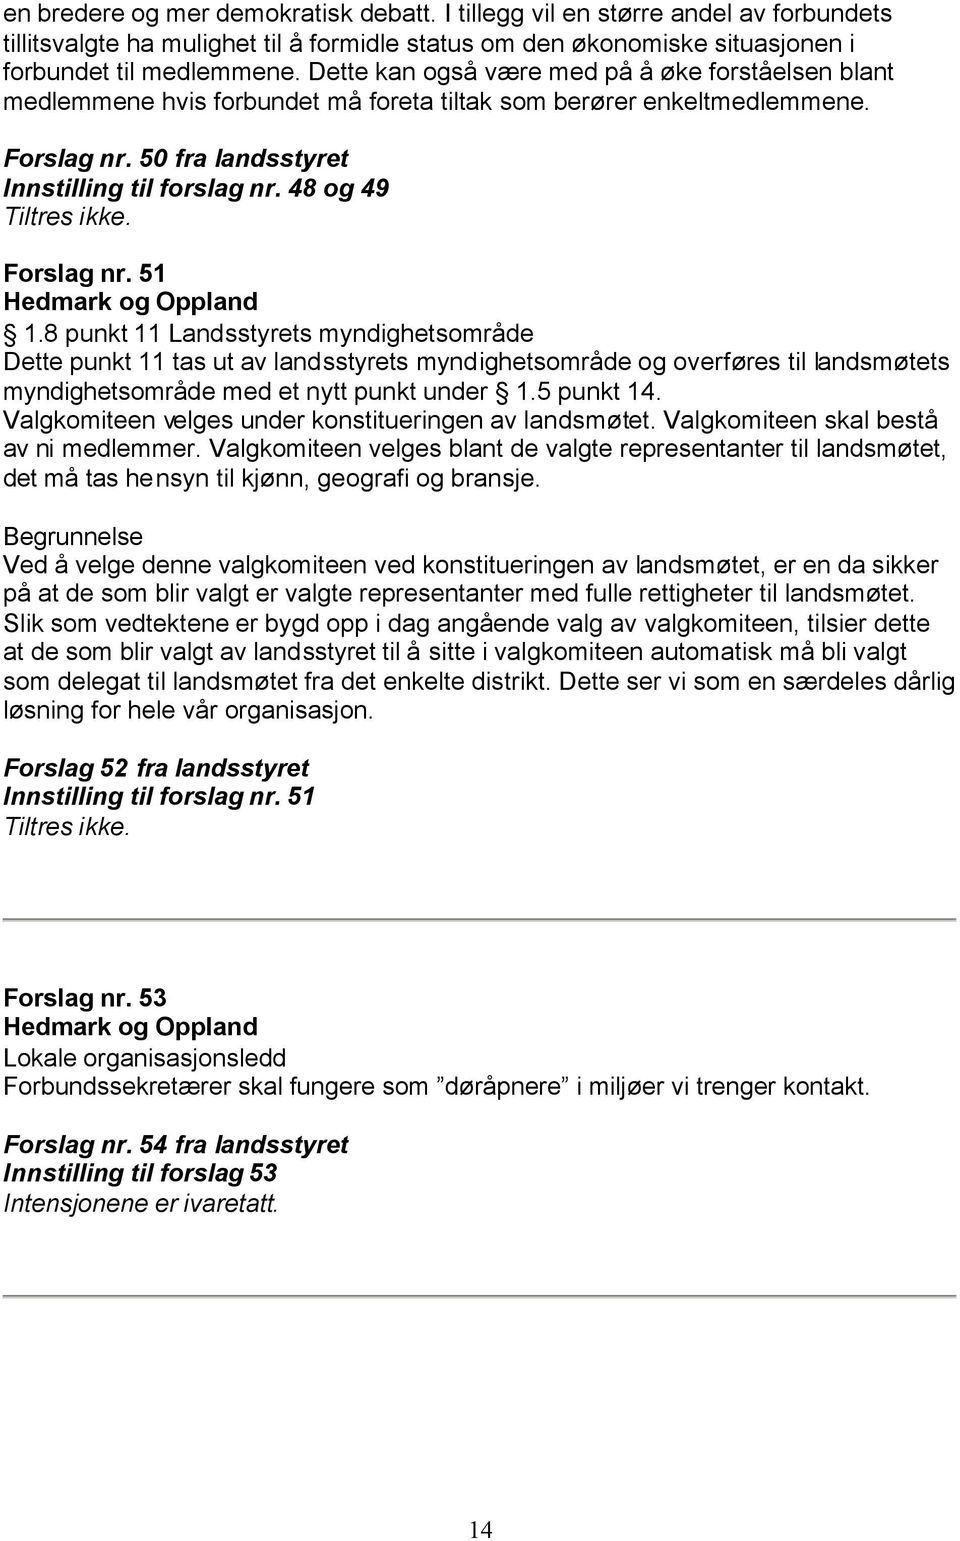 48 og 49 Forslag nr. 51 Hedmark og Oppland 1.